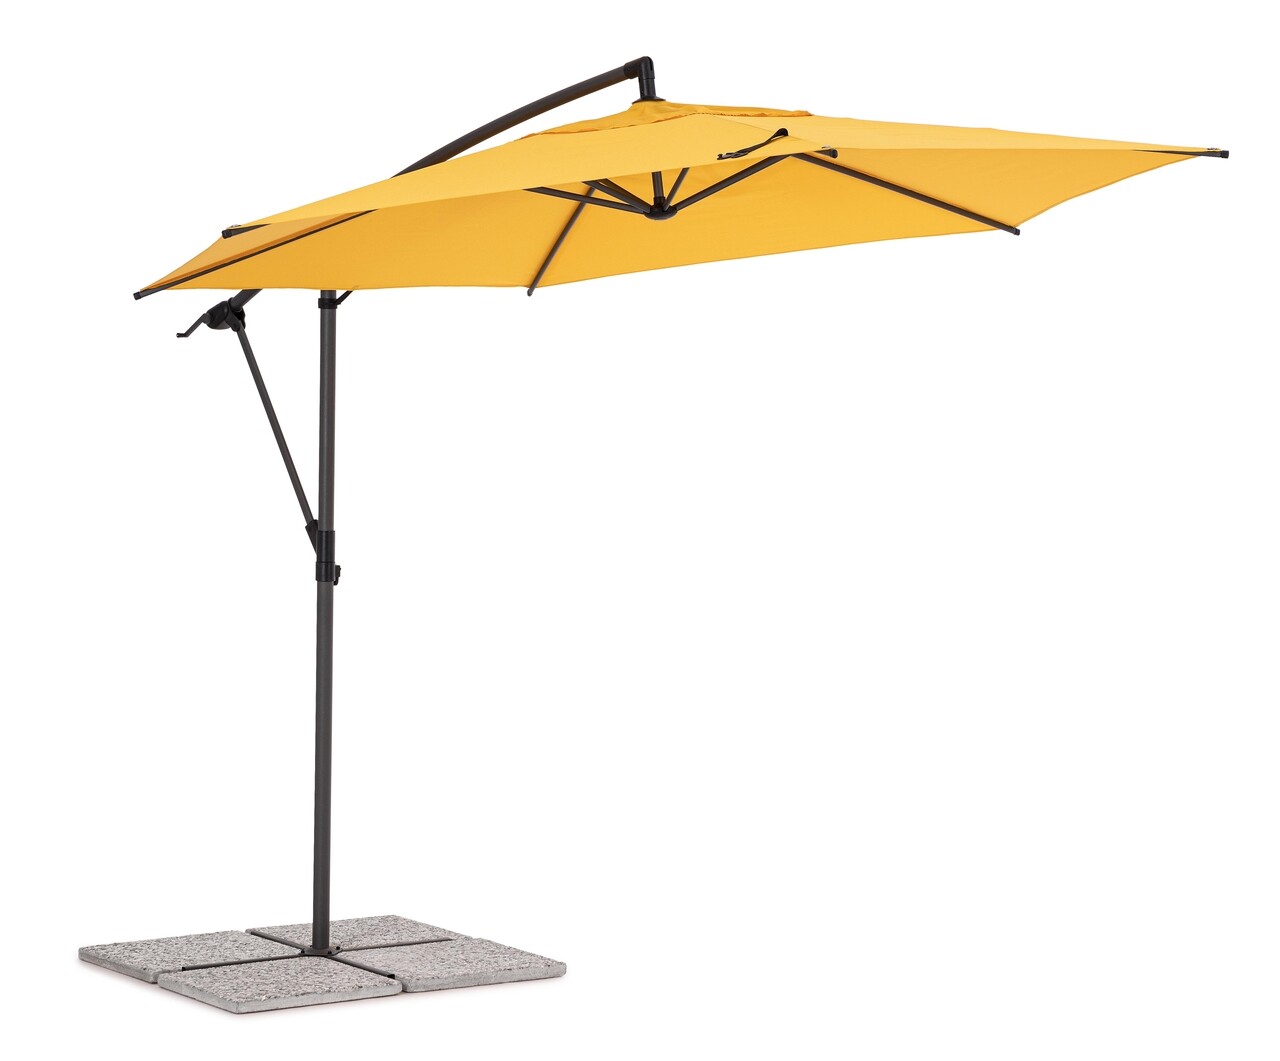 Tropea Kerti/terasz napernyő, Bizzotto, Ø 300 cm, oszlop Ø 46-48 mm, acél/poliészter, sárga